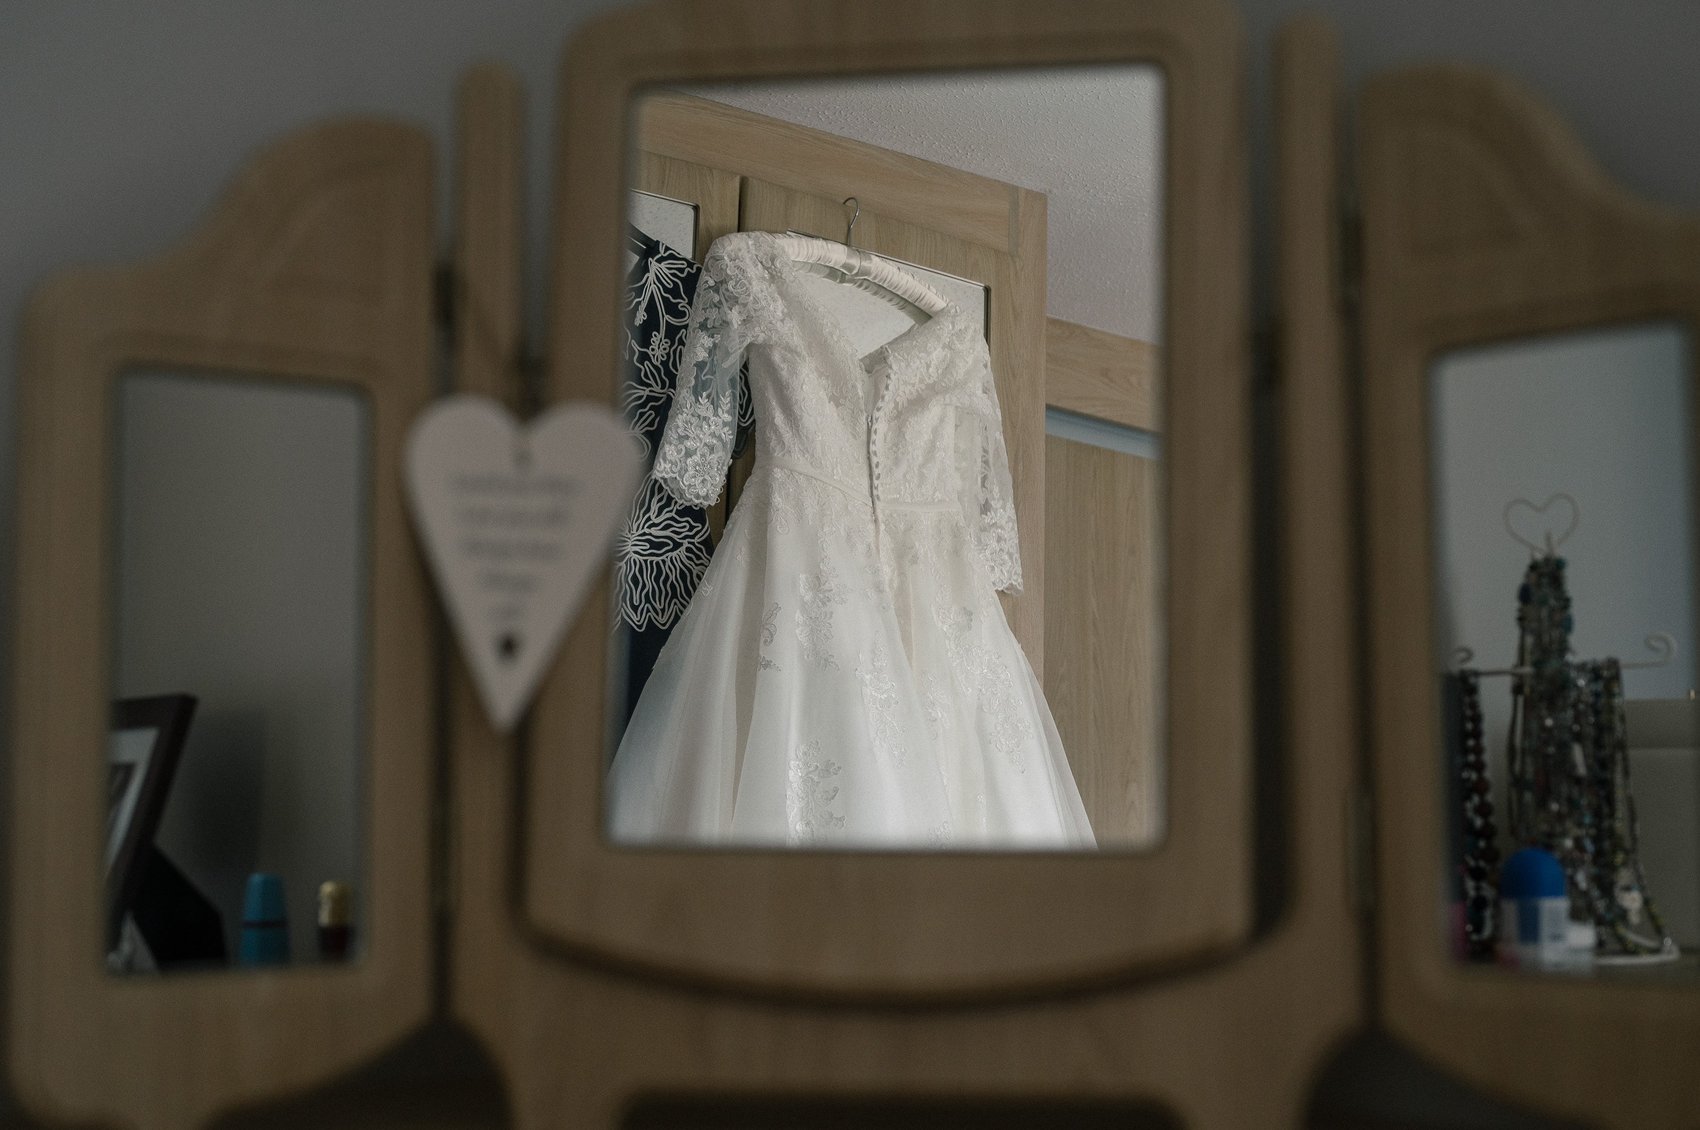 Highcliffe castle wedding dress